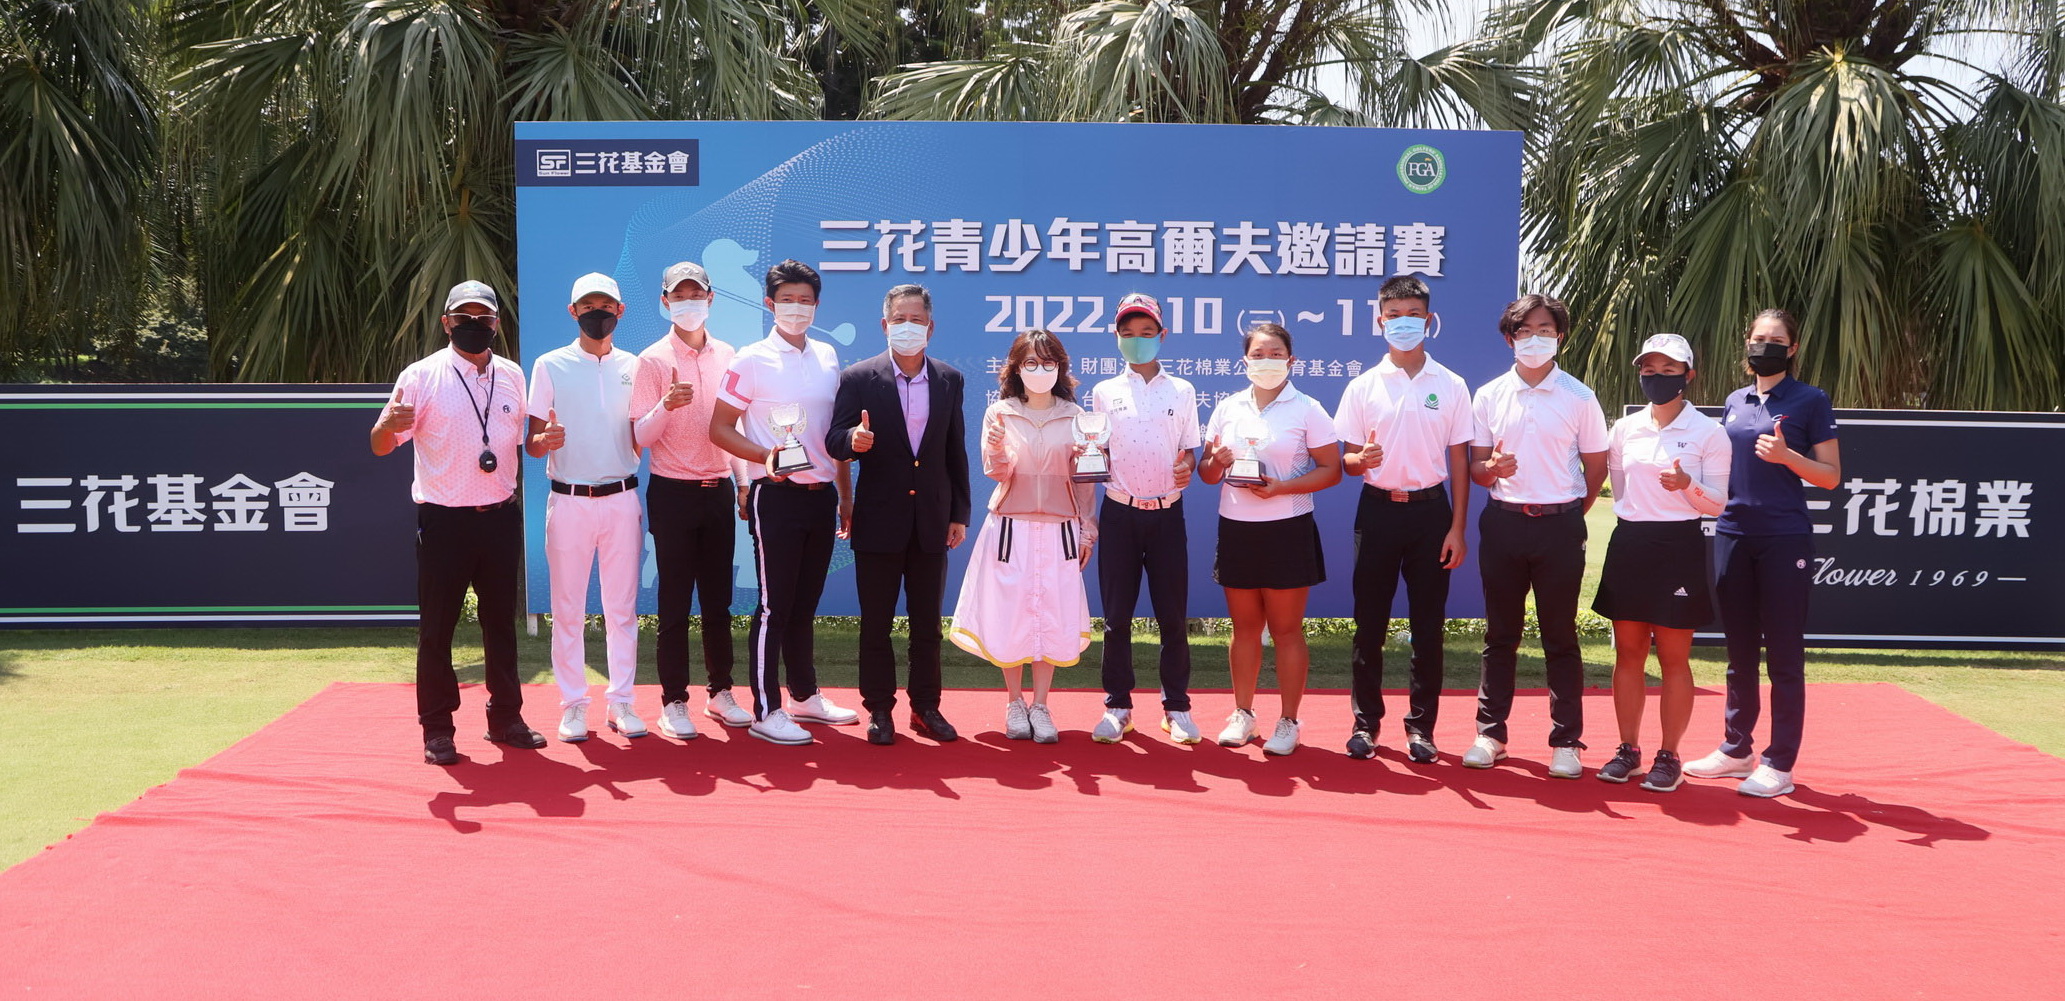 三花基金會執行長施貞菲(左六)和台北高爾夫俱樂部董事長林於豹(左五)和各組前三名選手合影。鍾豐榮攝影